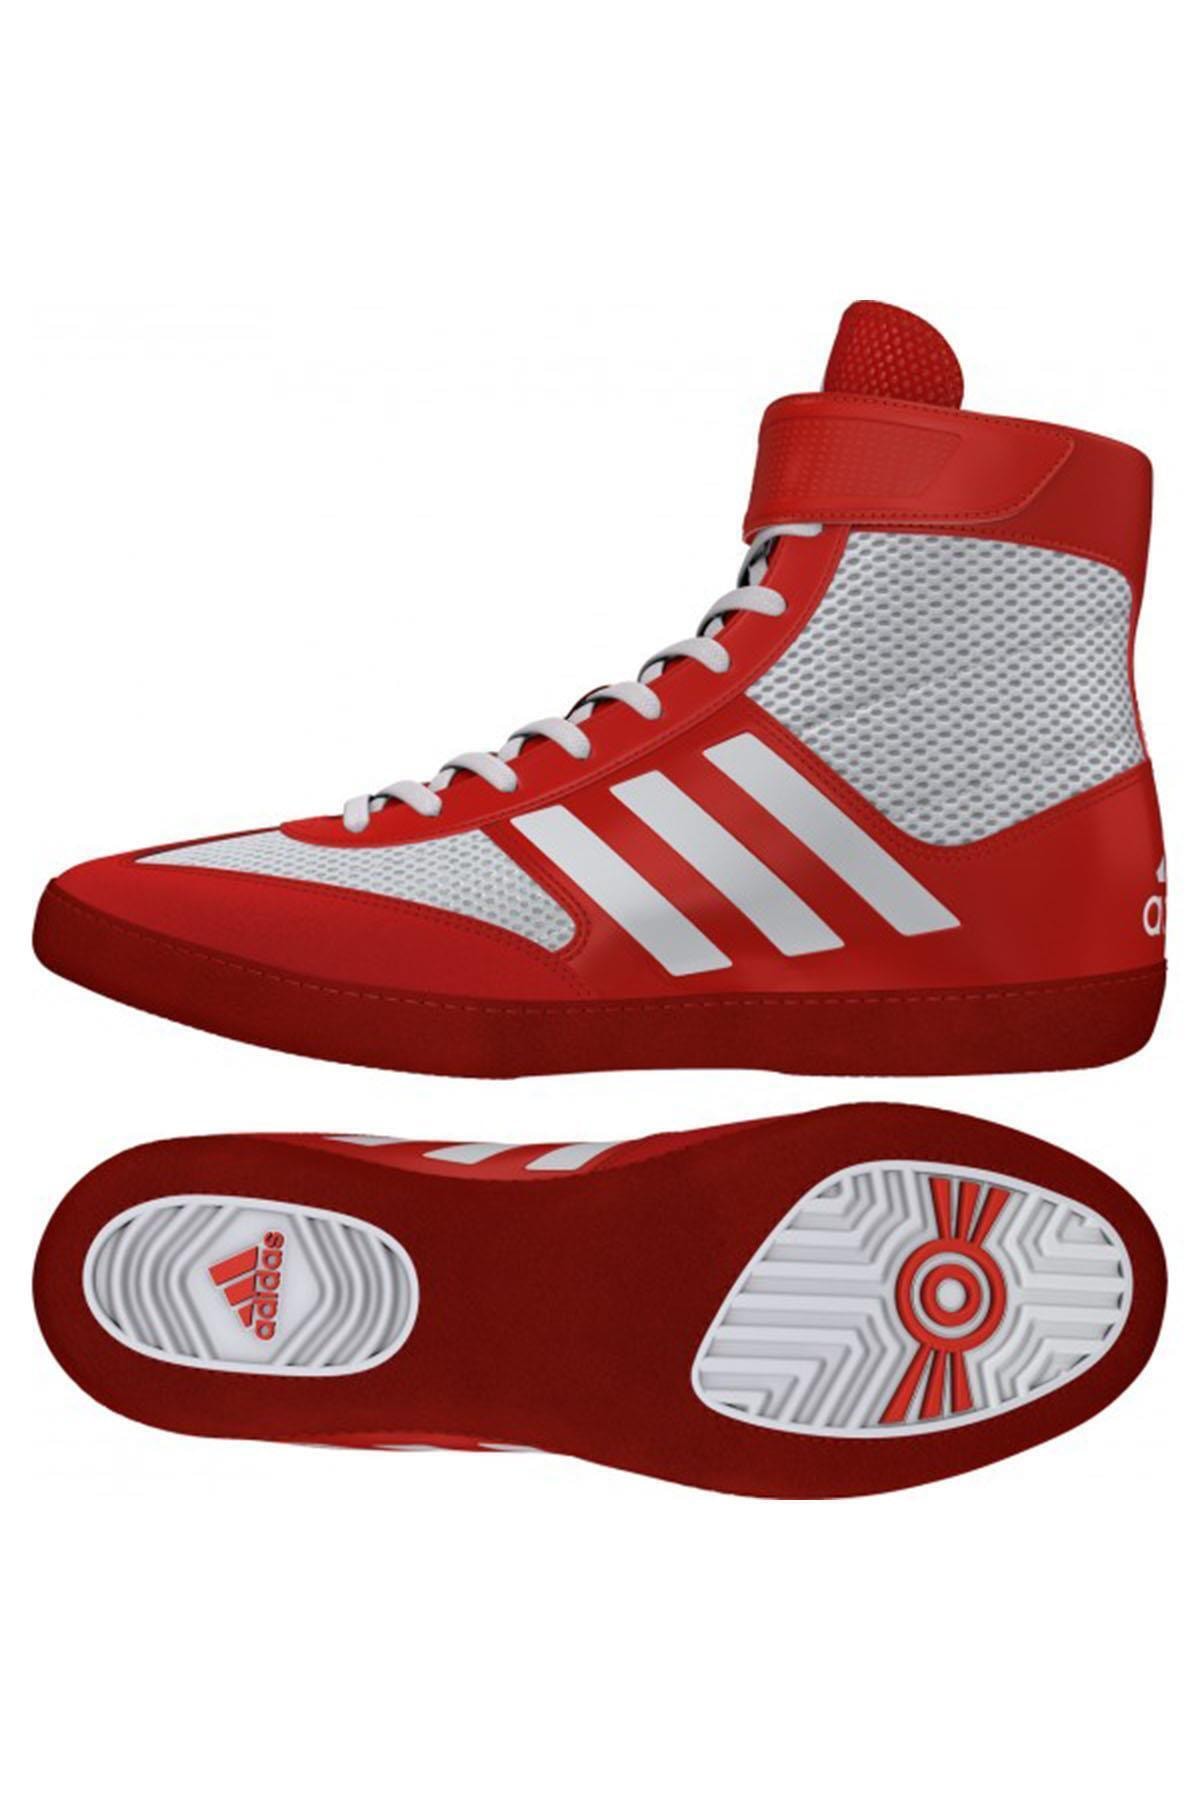 adidas Combact Speed Güreş Ayakkabısı Kırmızı-36 - 1